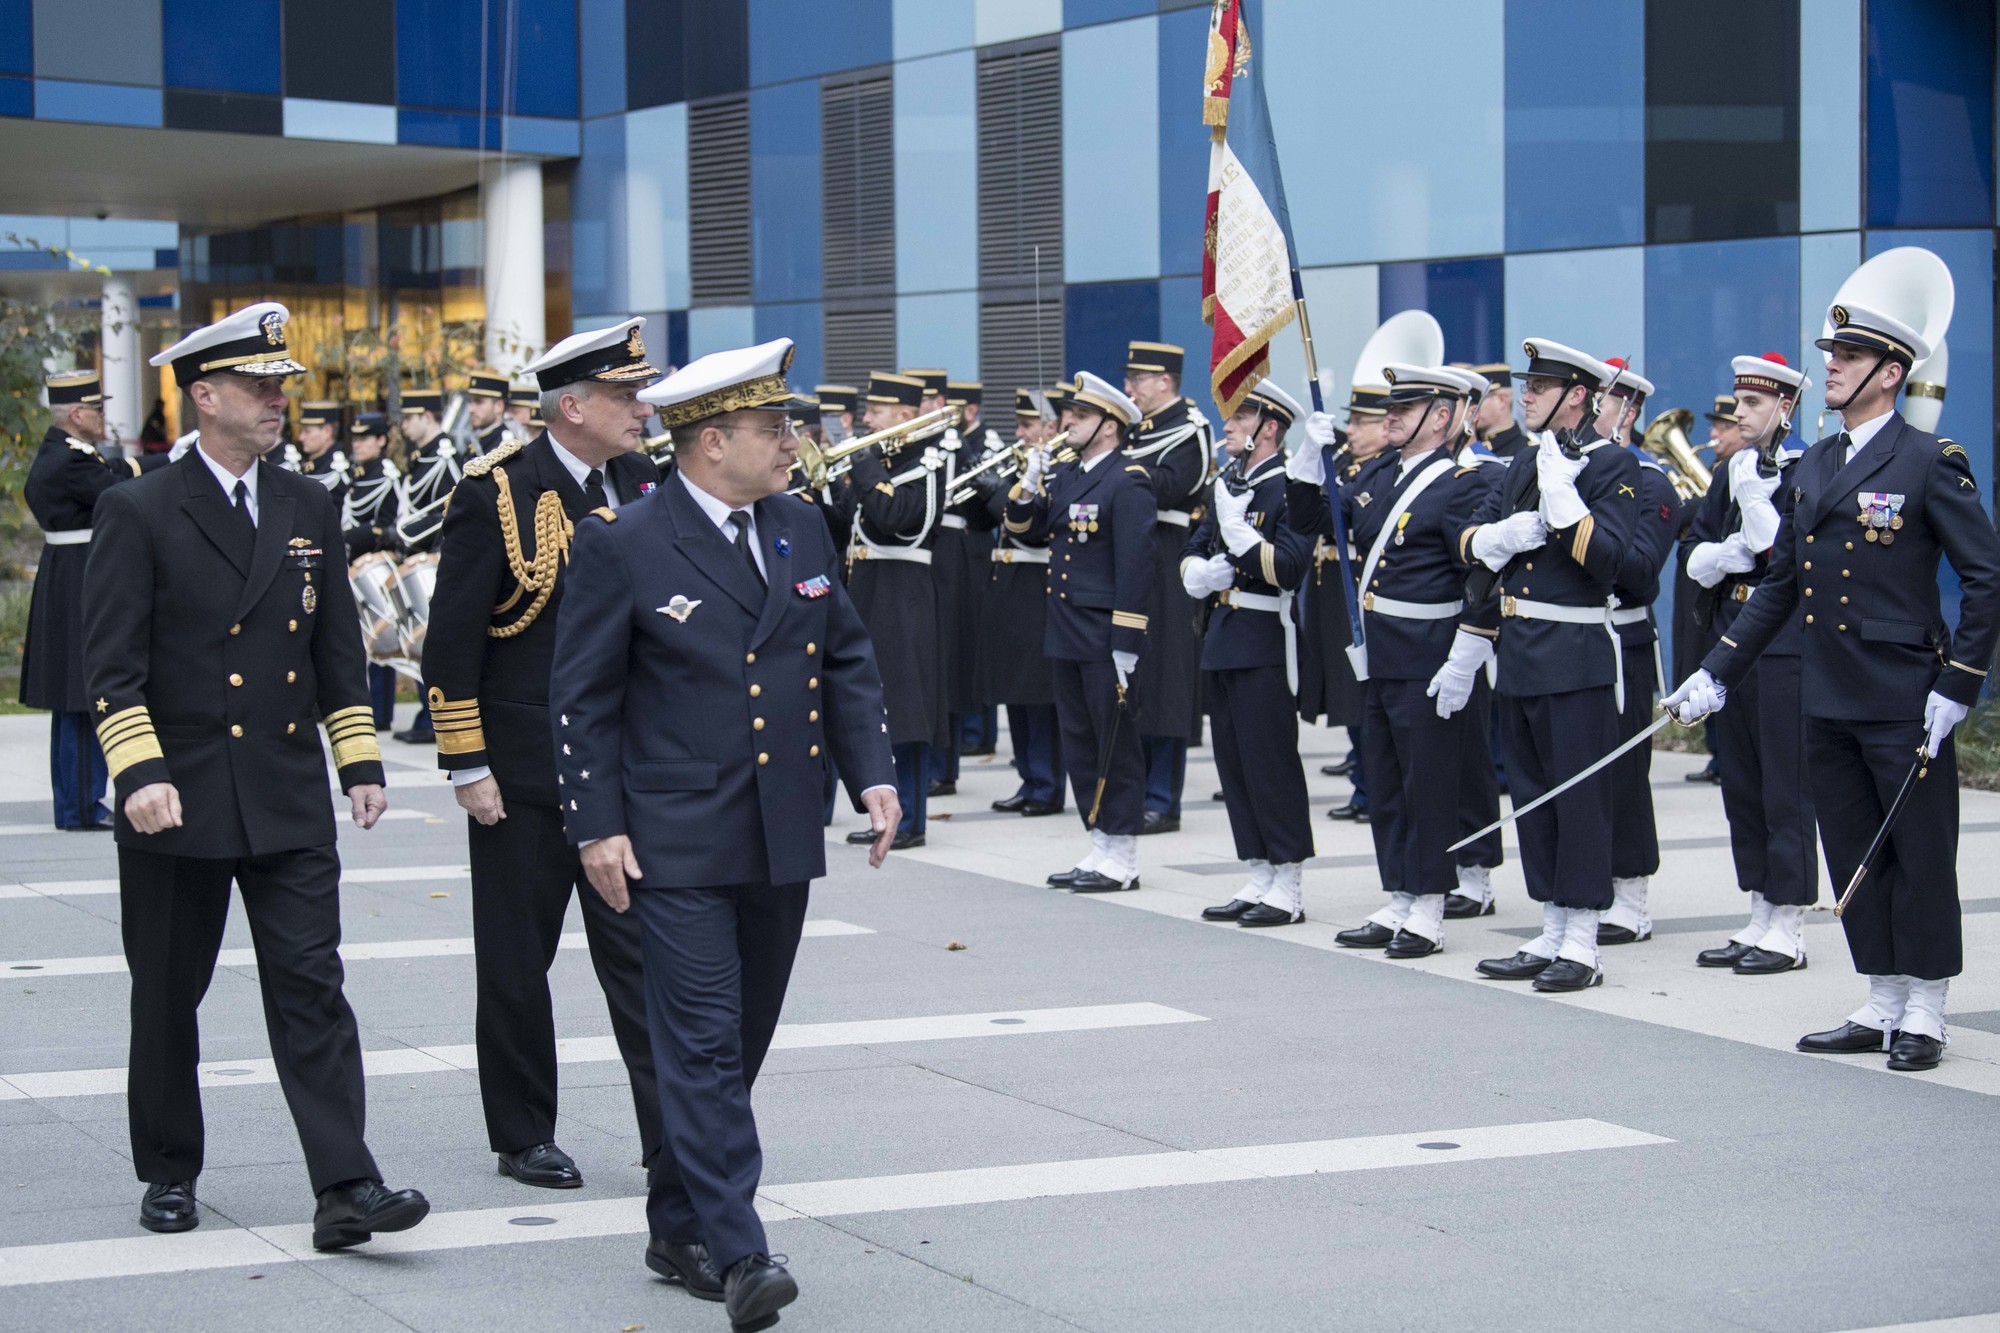 Le chef d’état-major de la marine accueille ses homologues britannique et américain